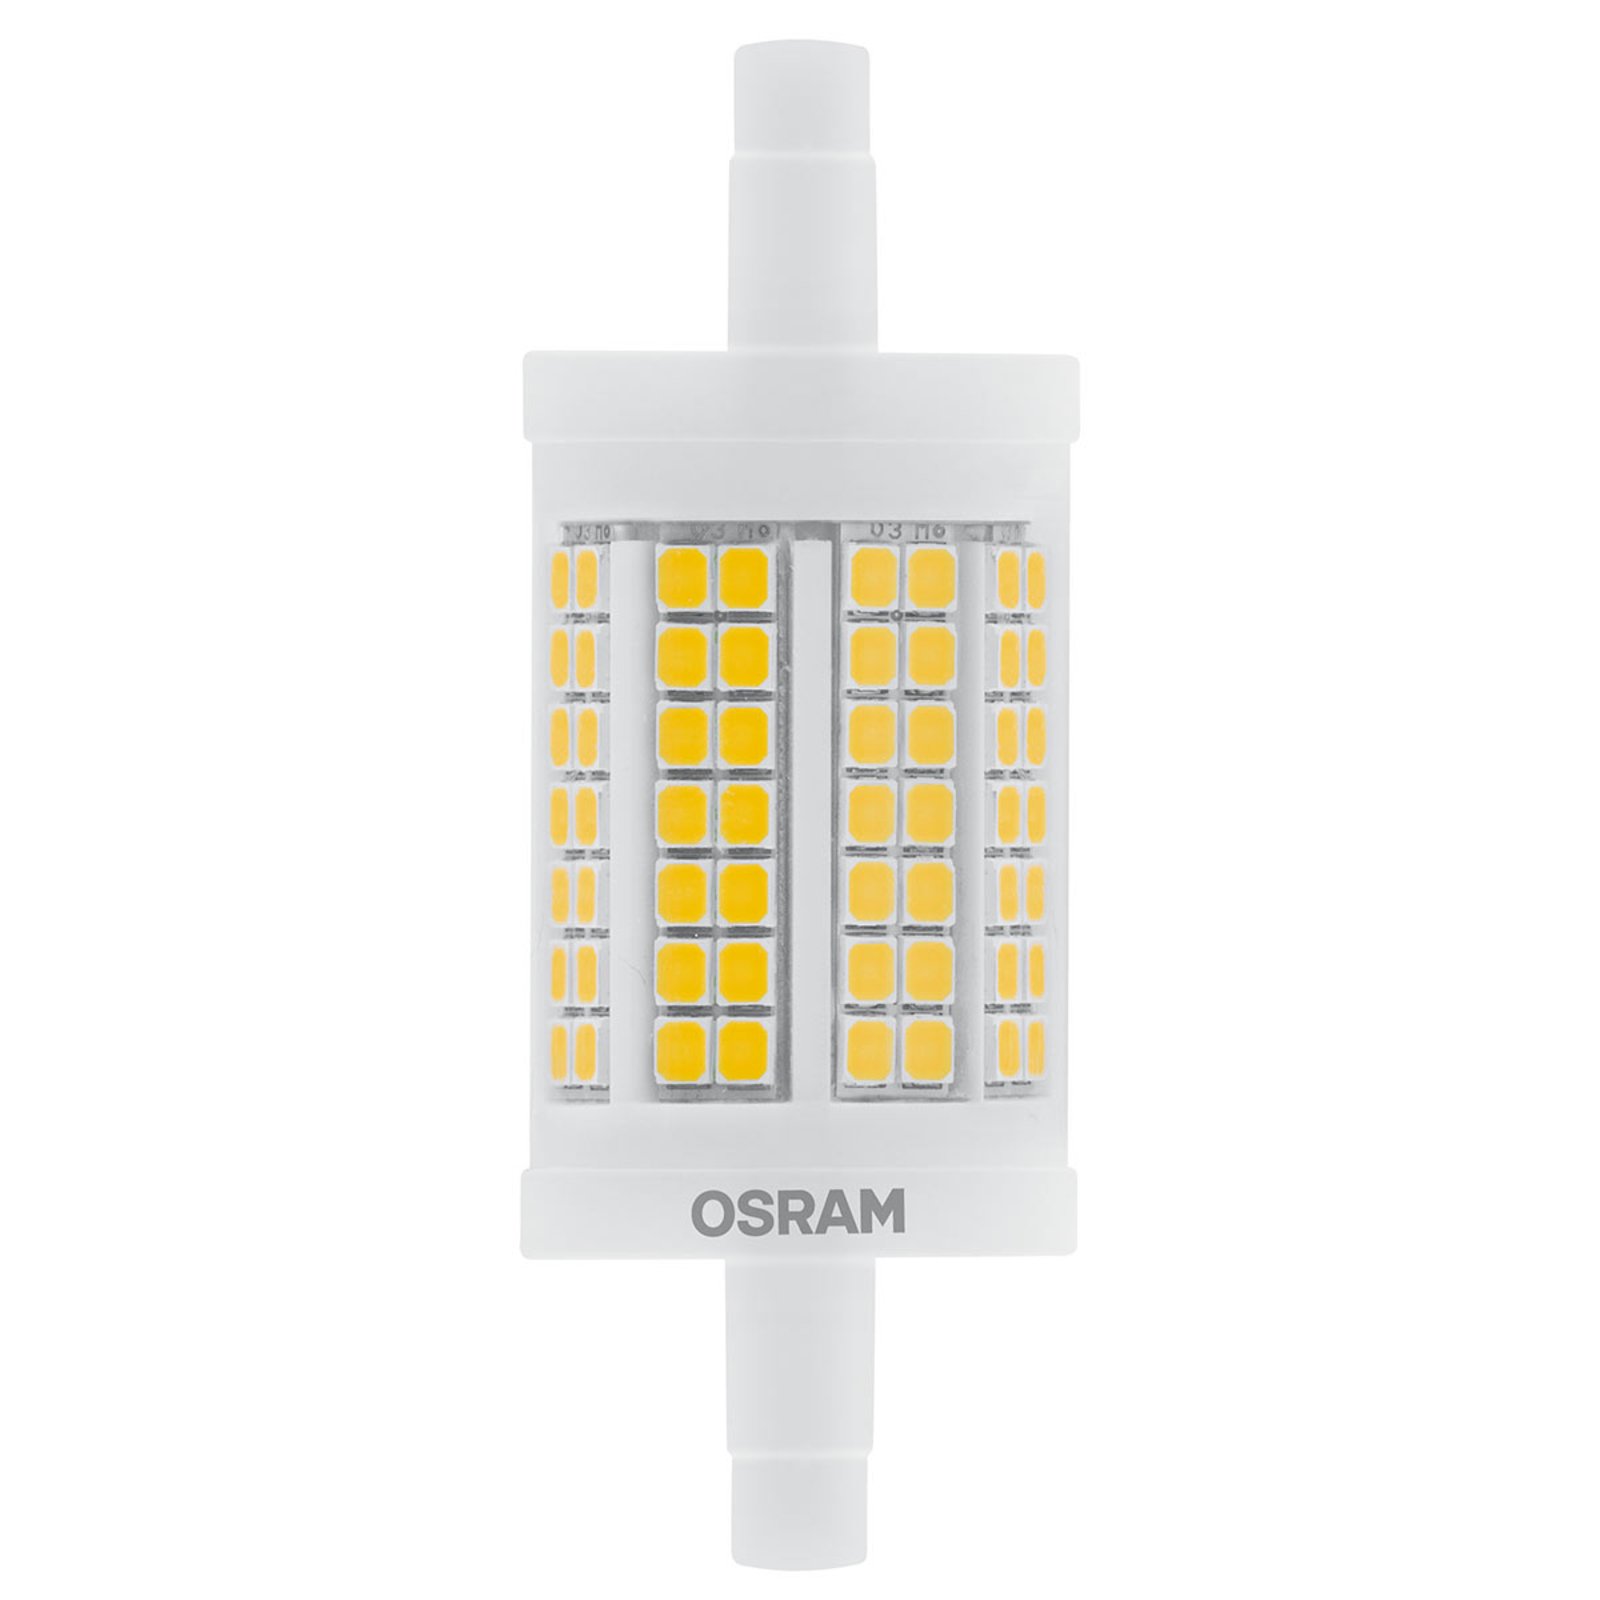 Λαμπτήρας ράβδου LED OSRAM R7s 12W 7.8cm 827 με δυνατότητα ρύθμισης